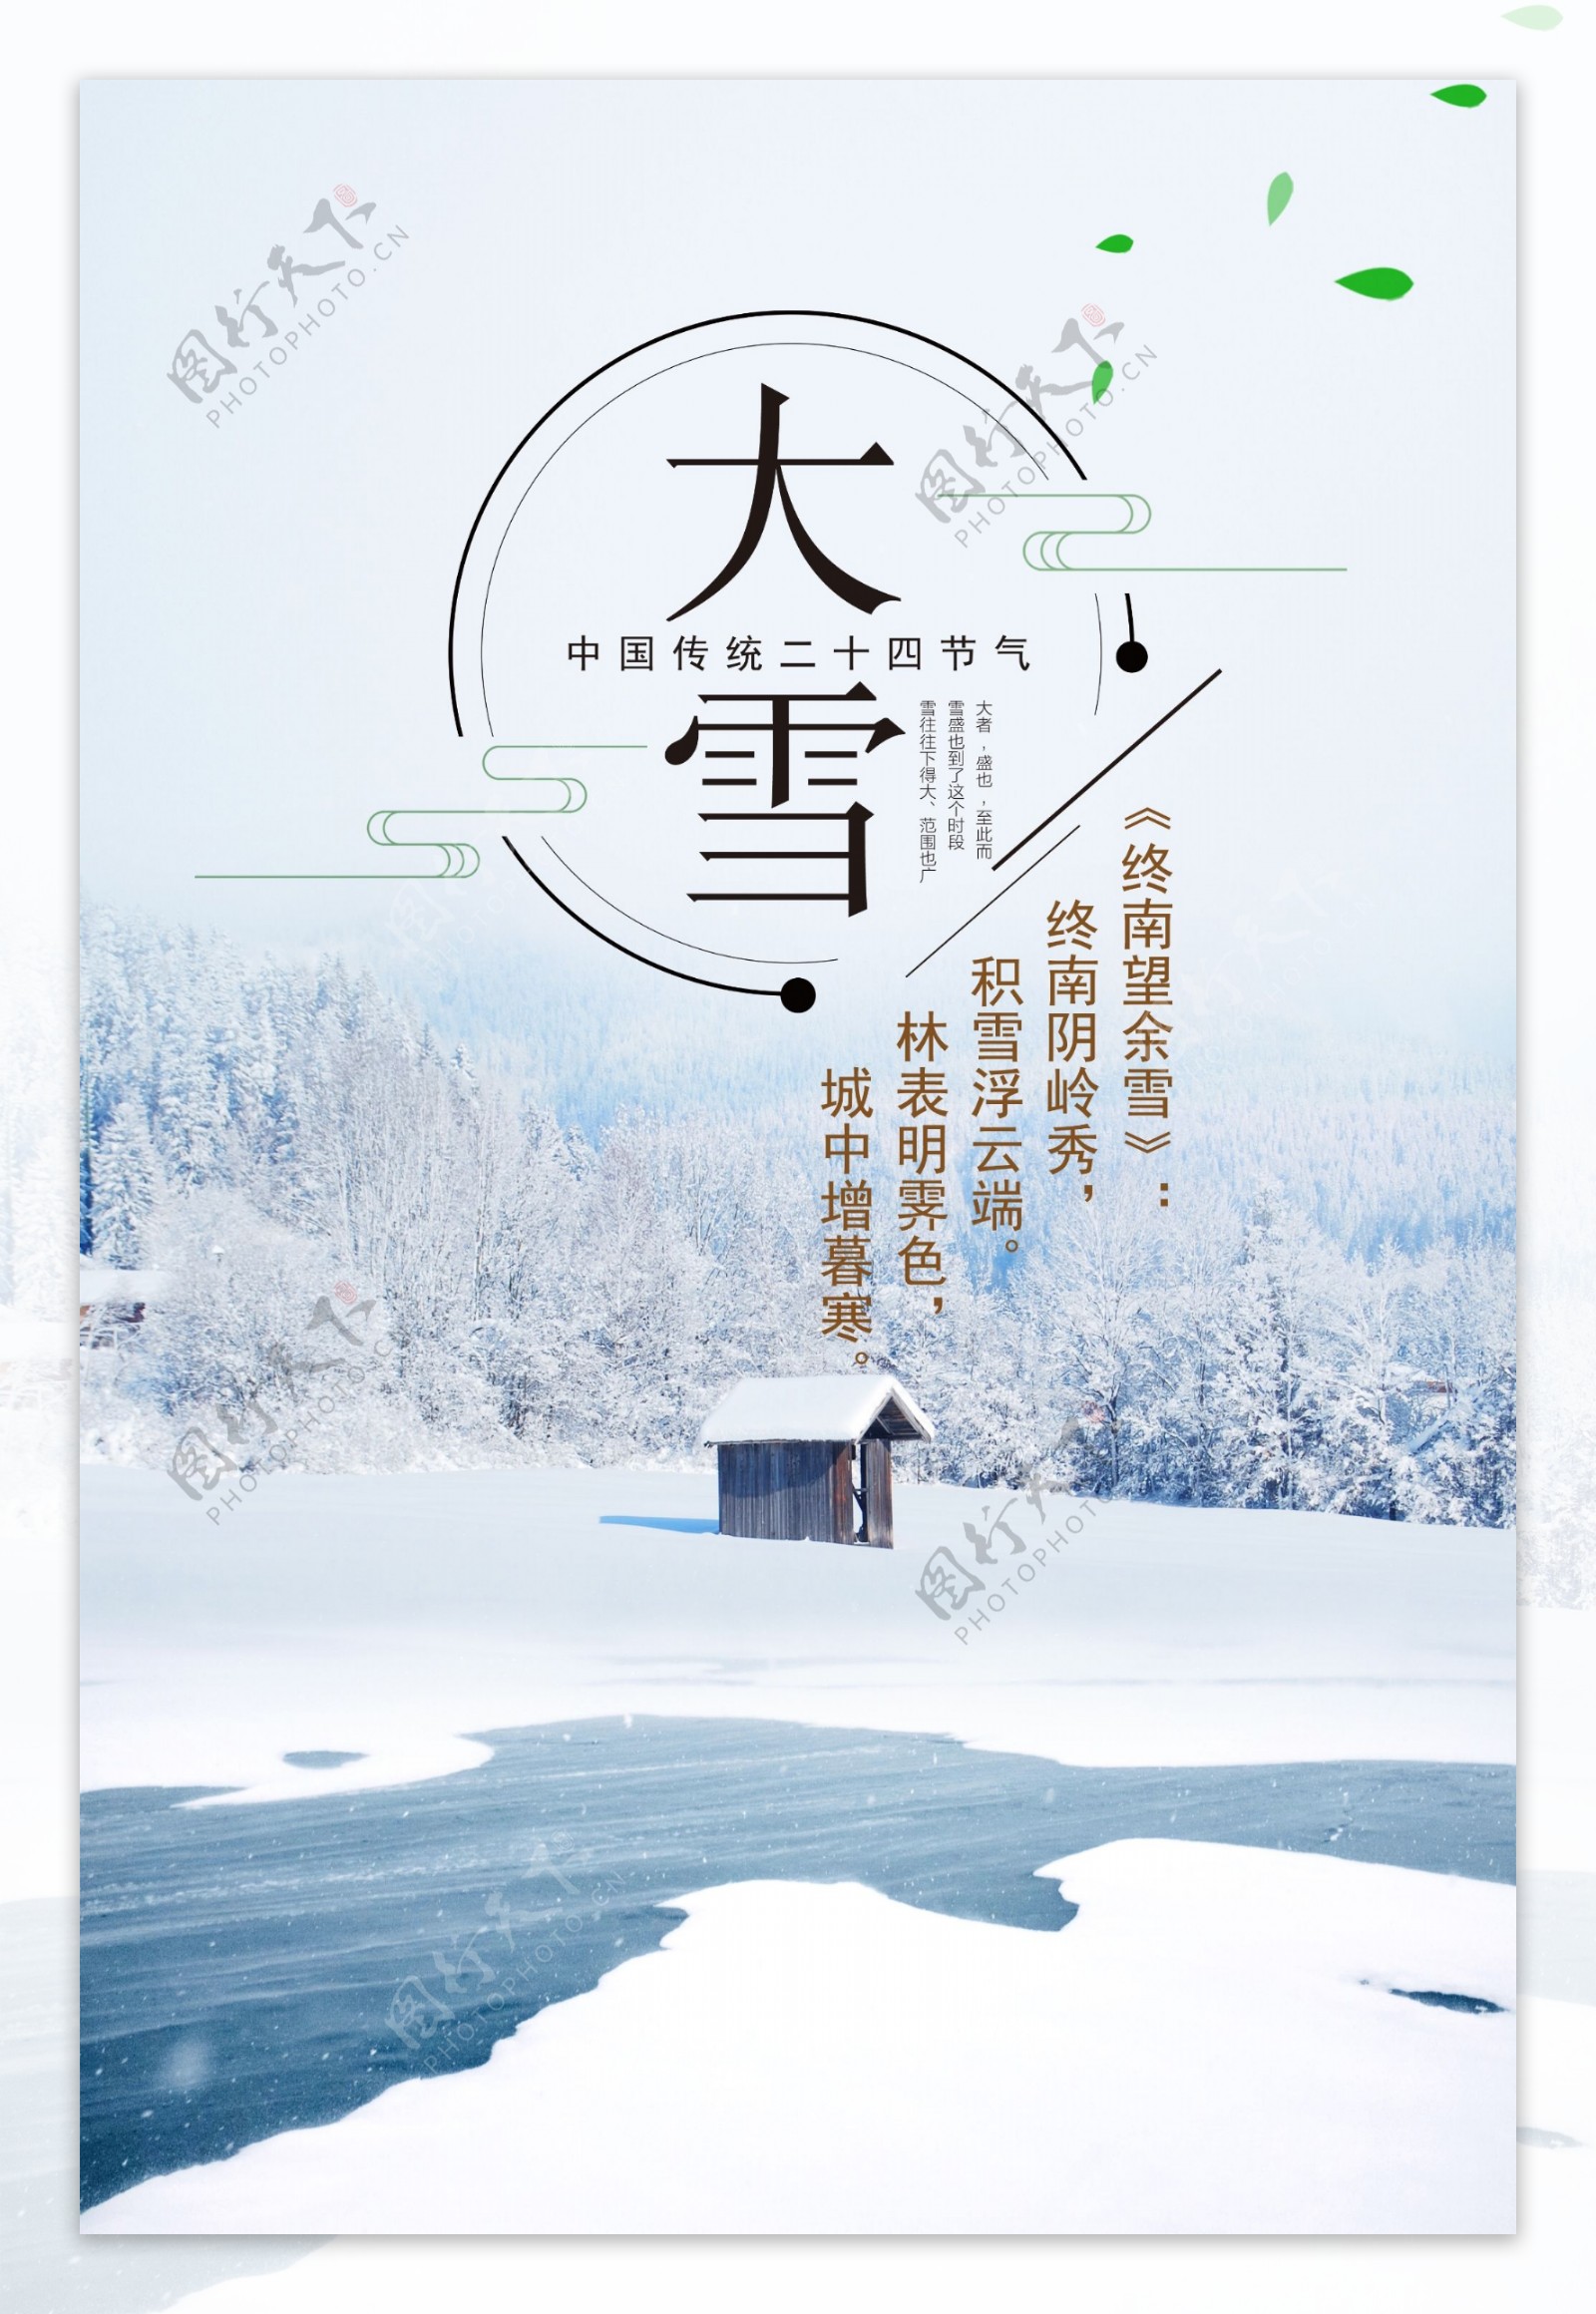 大雪中国风简约节日海报展板